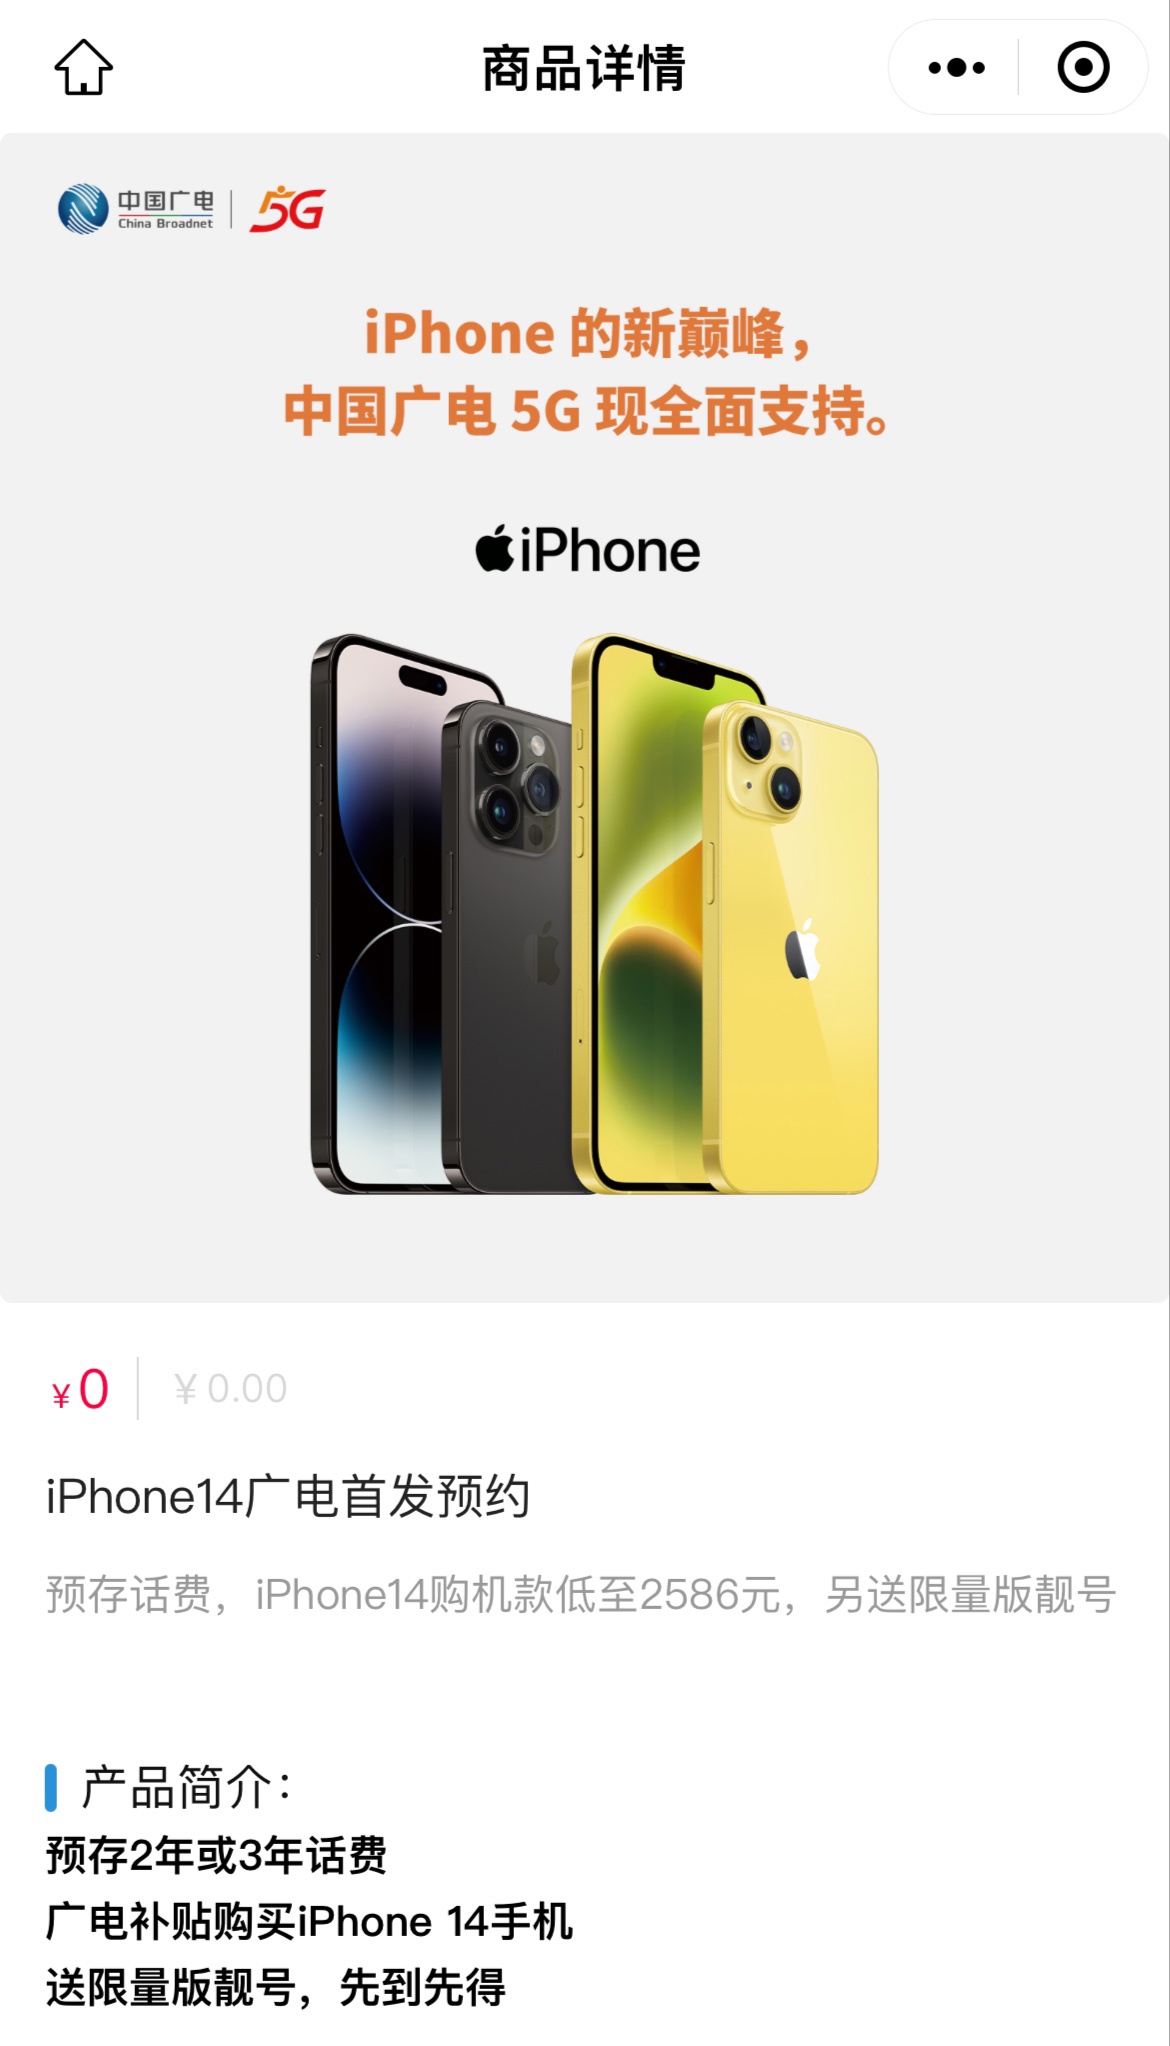 中国广电 iPhone 15 / Pro 系列合约机预约开启